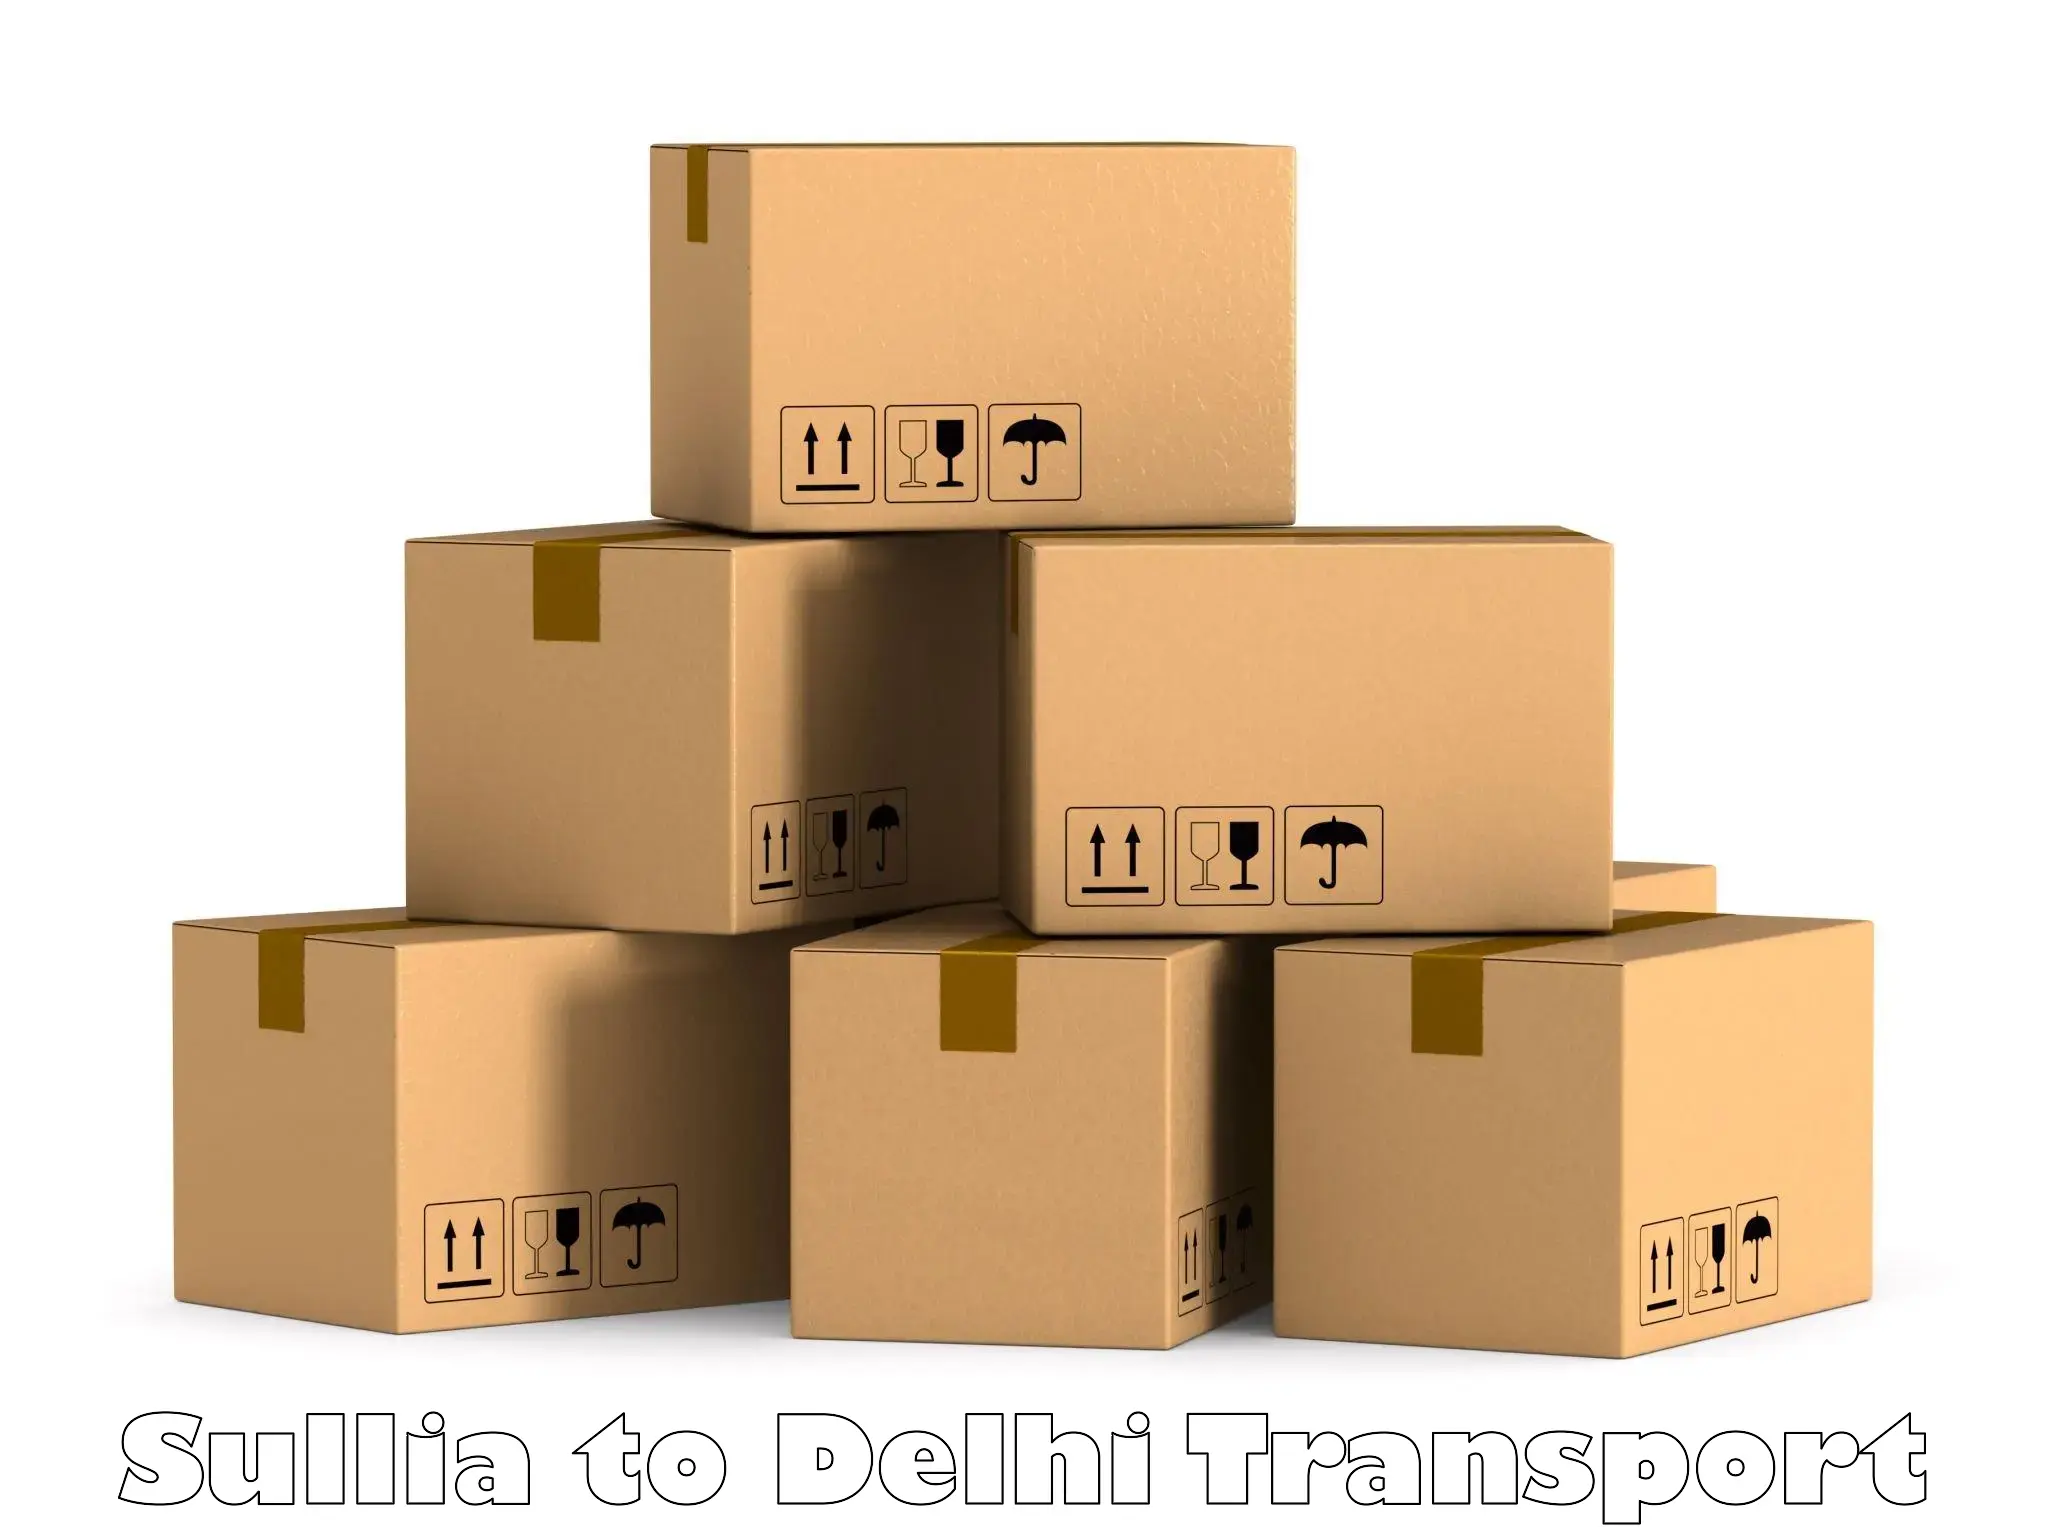 Nearby transport service Sullia to Jamia Millia Islamia New Delhi